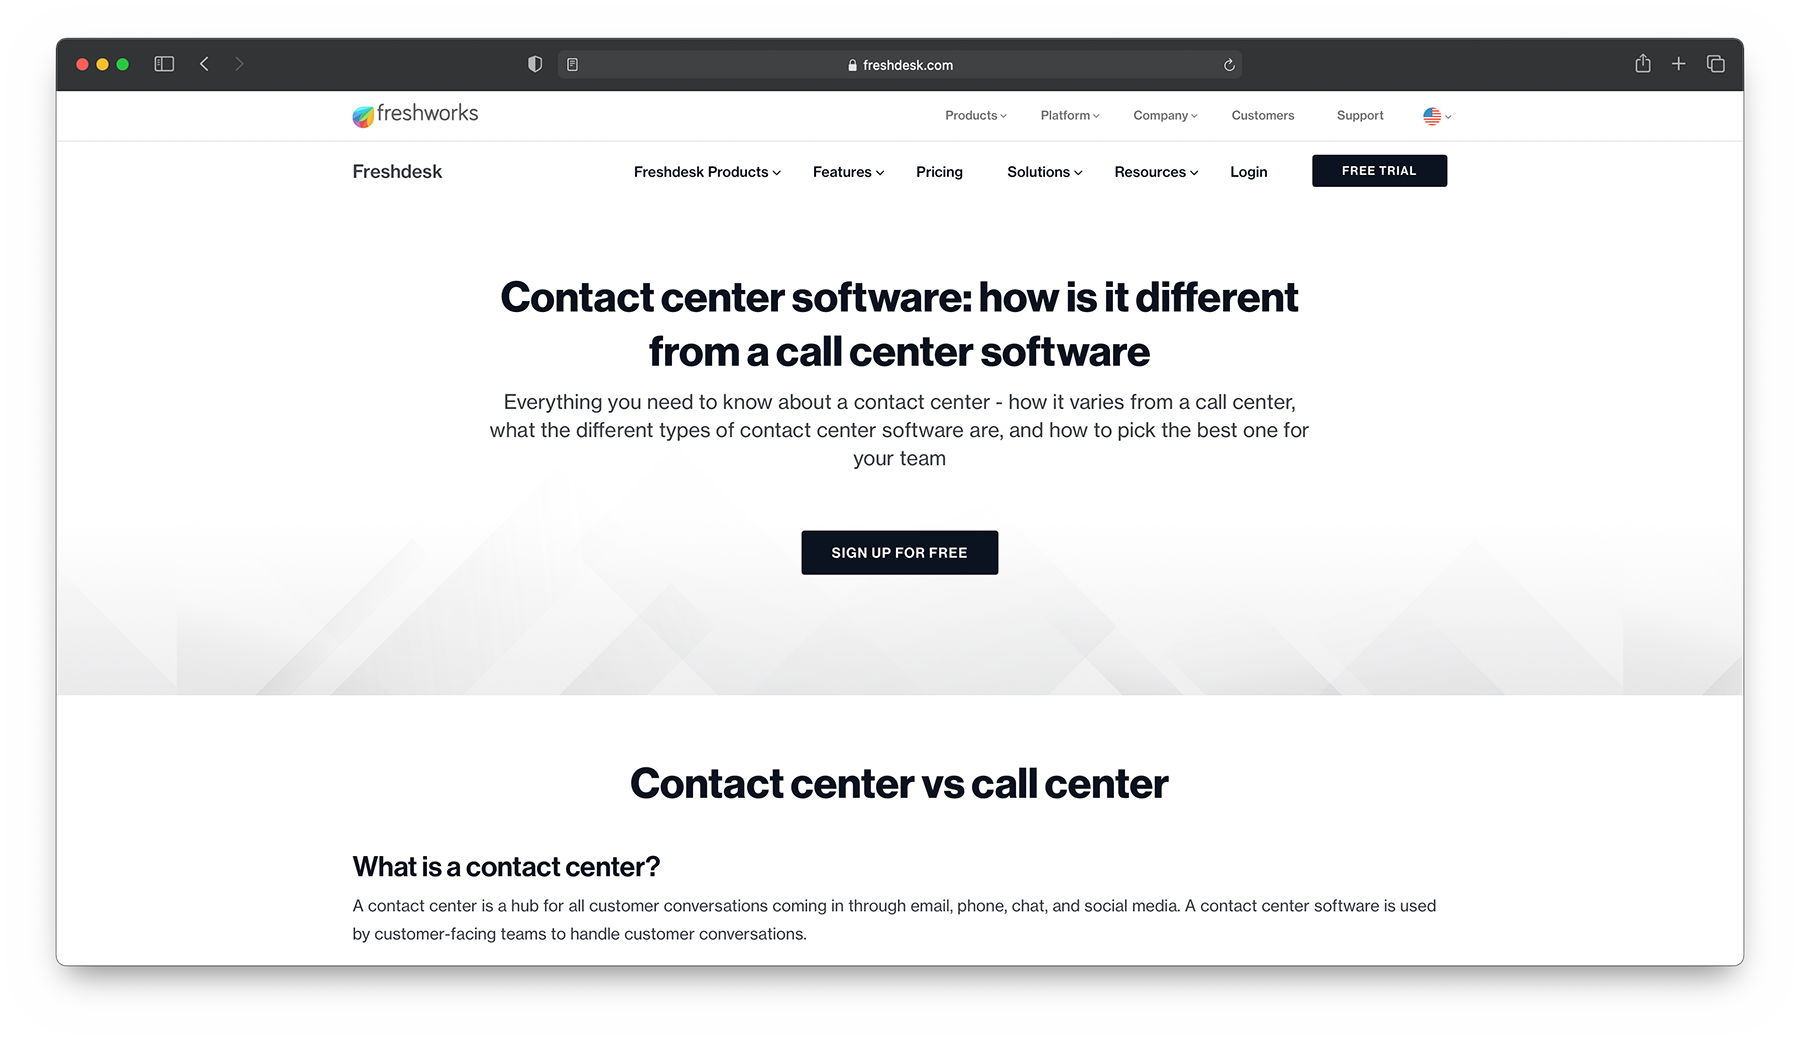 Freshdesk Contact Center